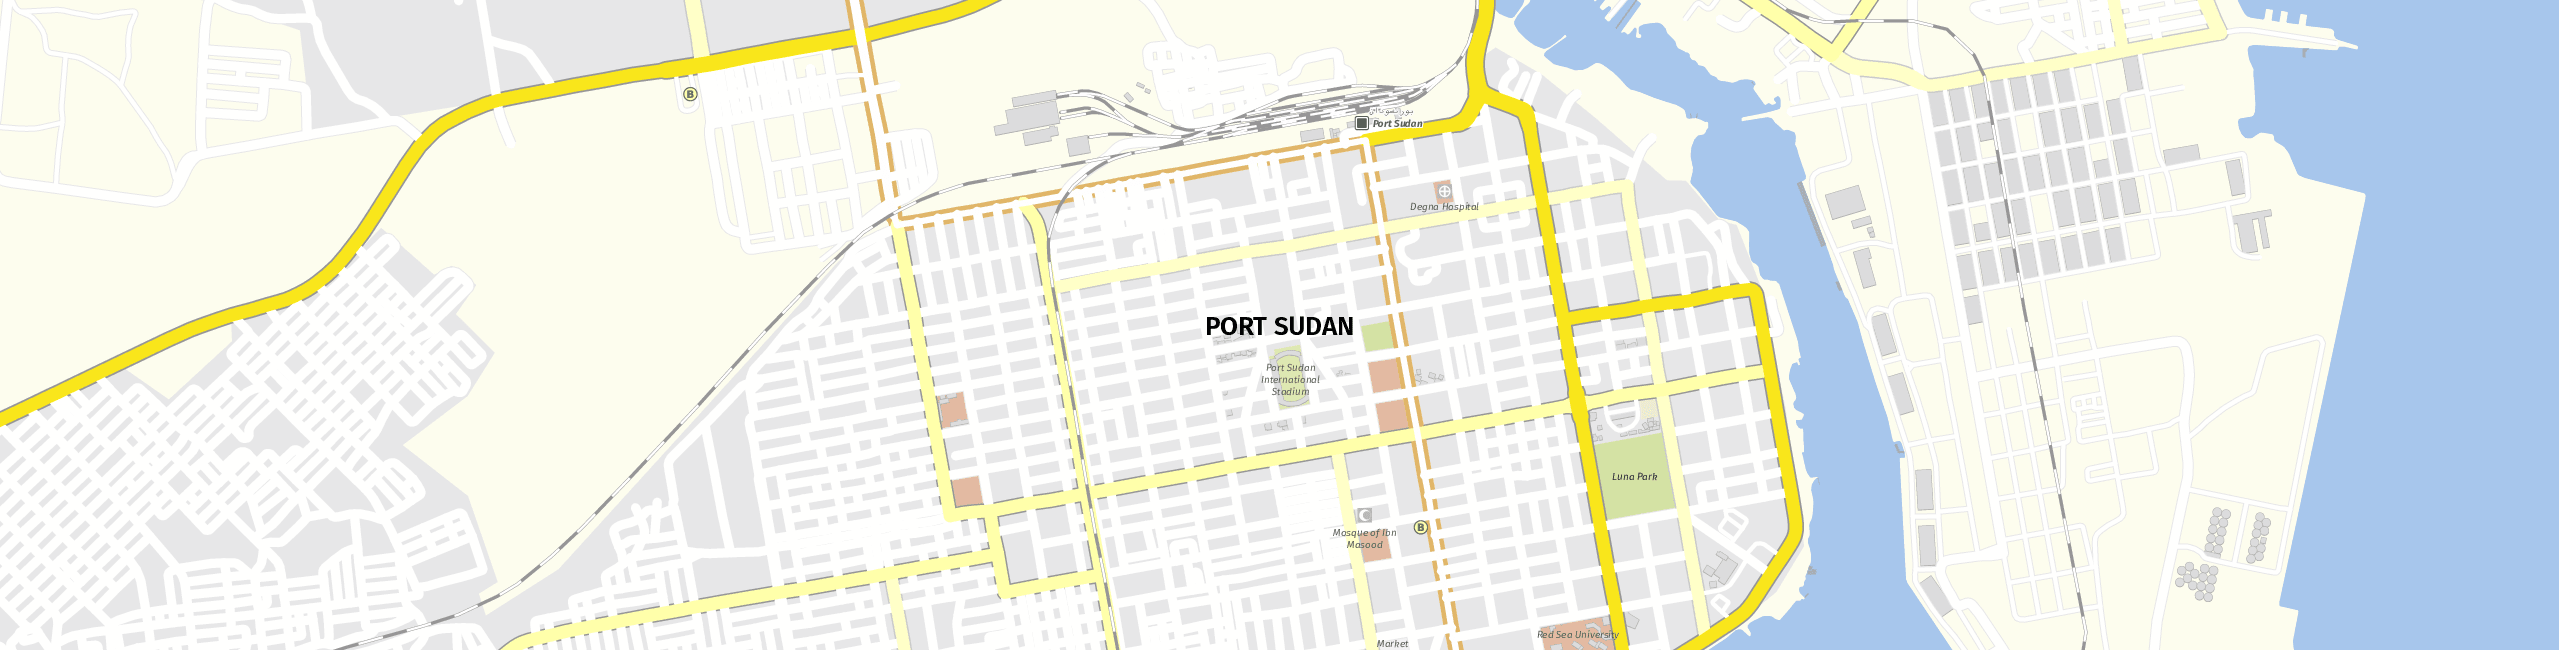 Stadtplan Port Sudan zum Downloaden.